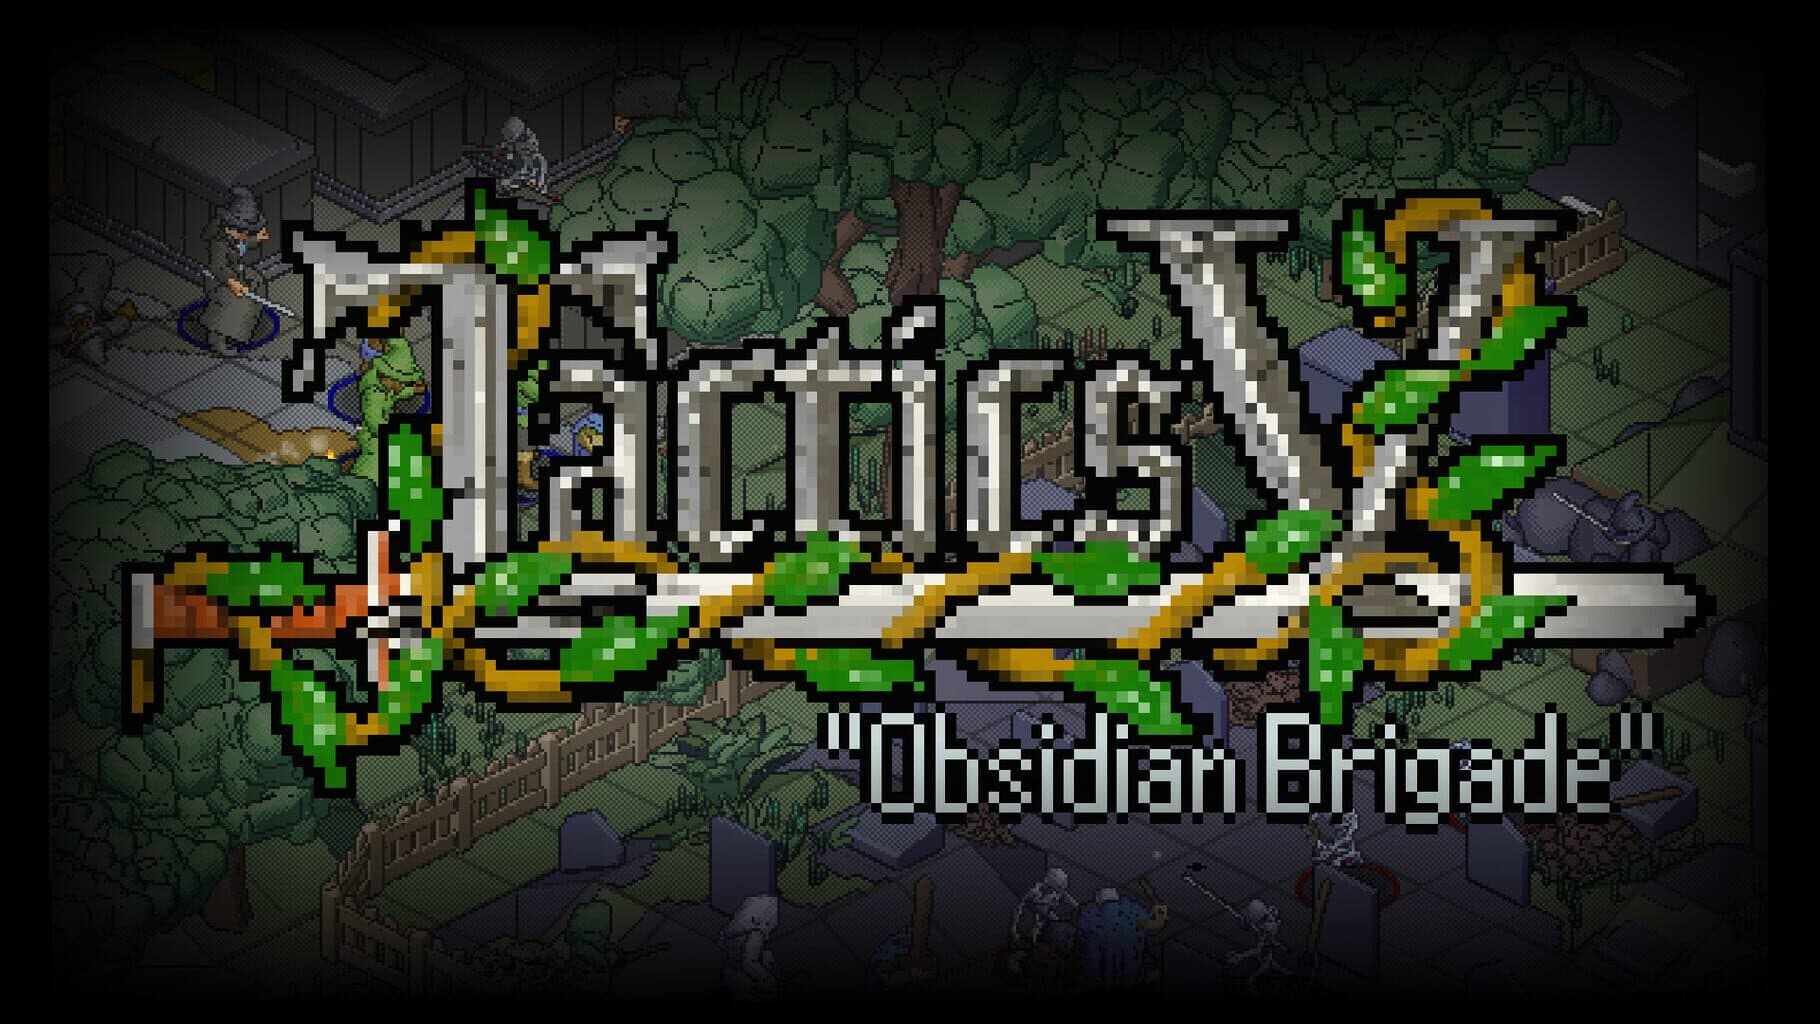 Tactics V: "Obsidian Brigade" Image